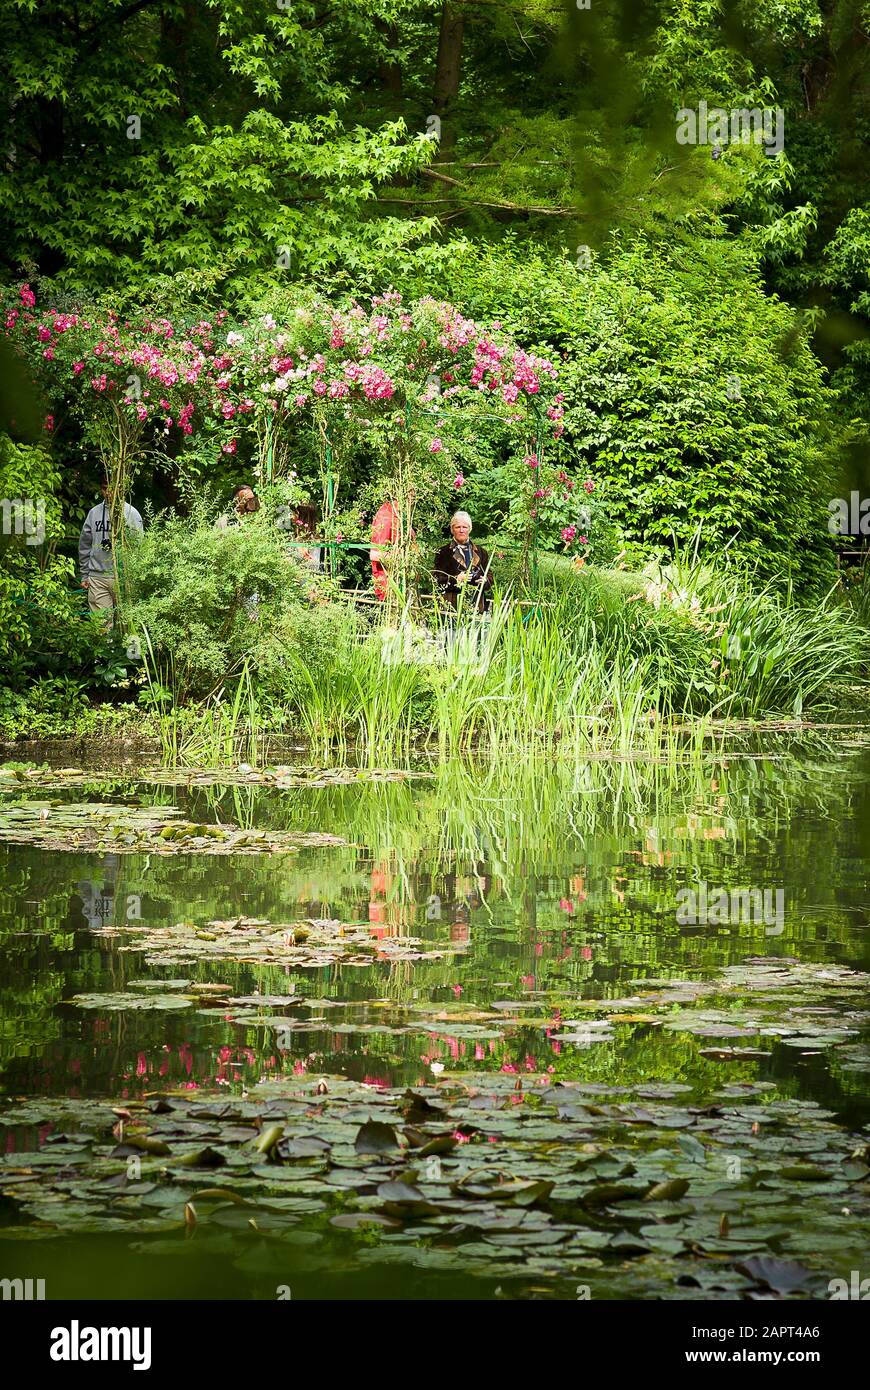 Le jardin de Monet - de l'autre côté de la piscine de nénuphars - une scène paisible Banque D'Images